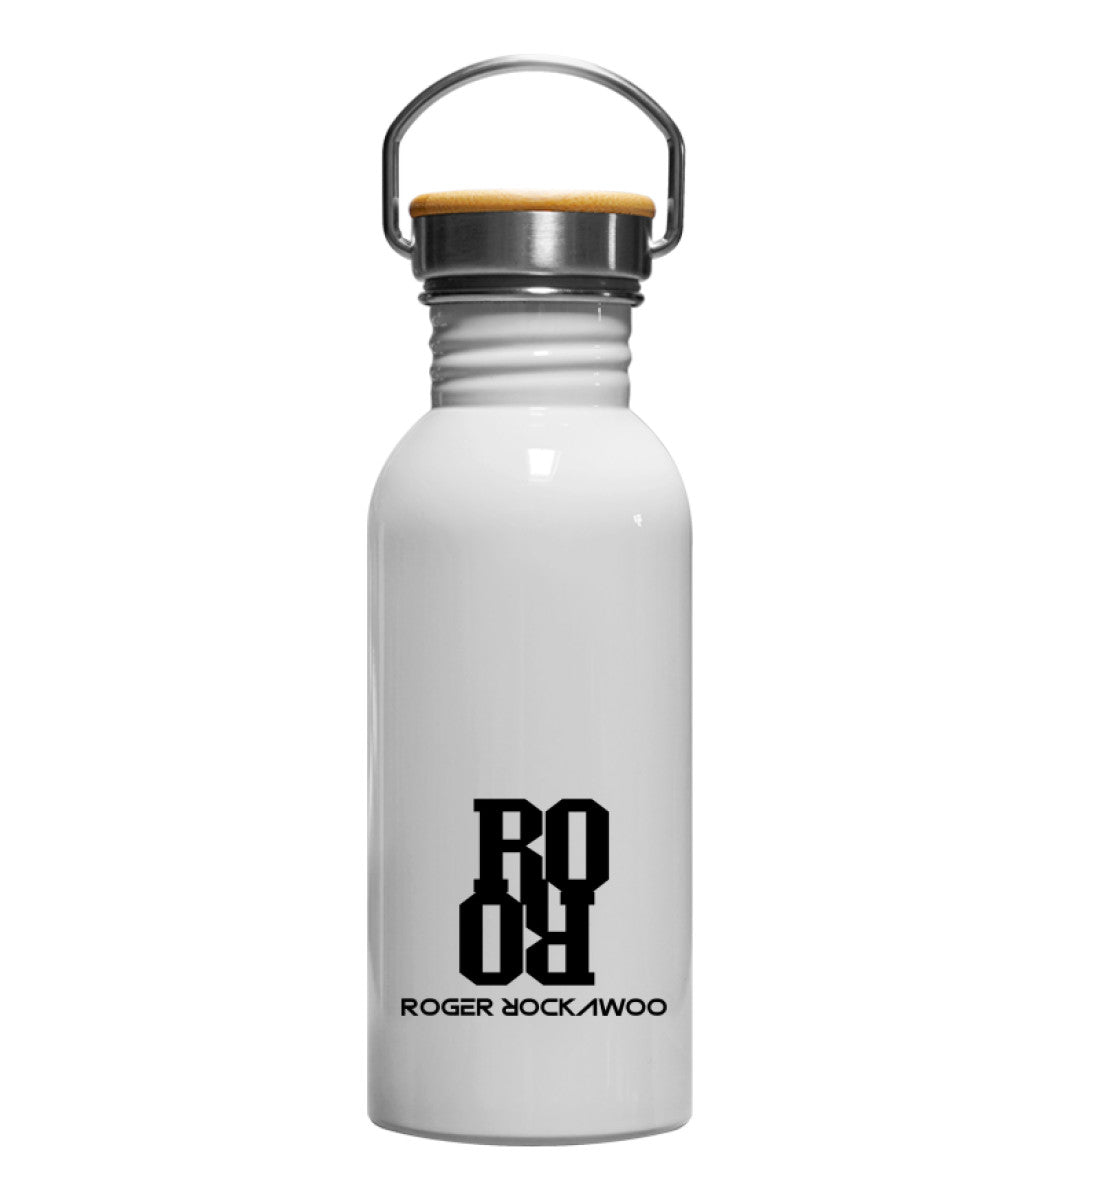 Edelstahl Trinkflasche weiß in Emaille Optik bedruckt mit dem Design der Roger Rockawoo Kollektion Logo